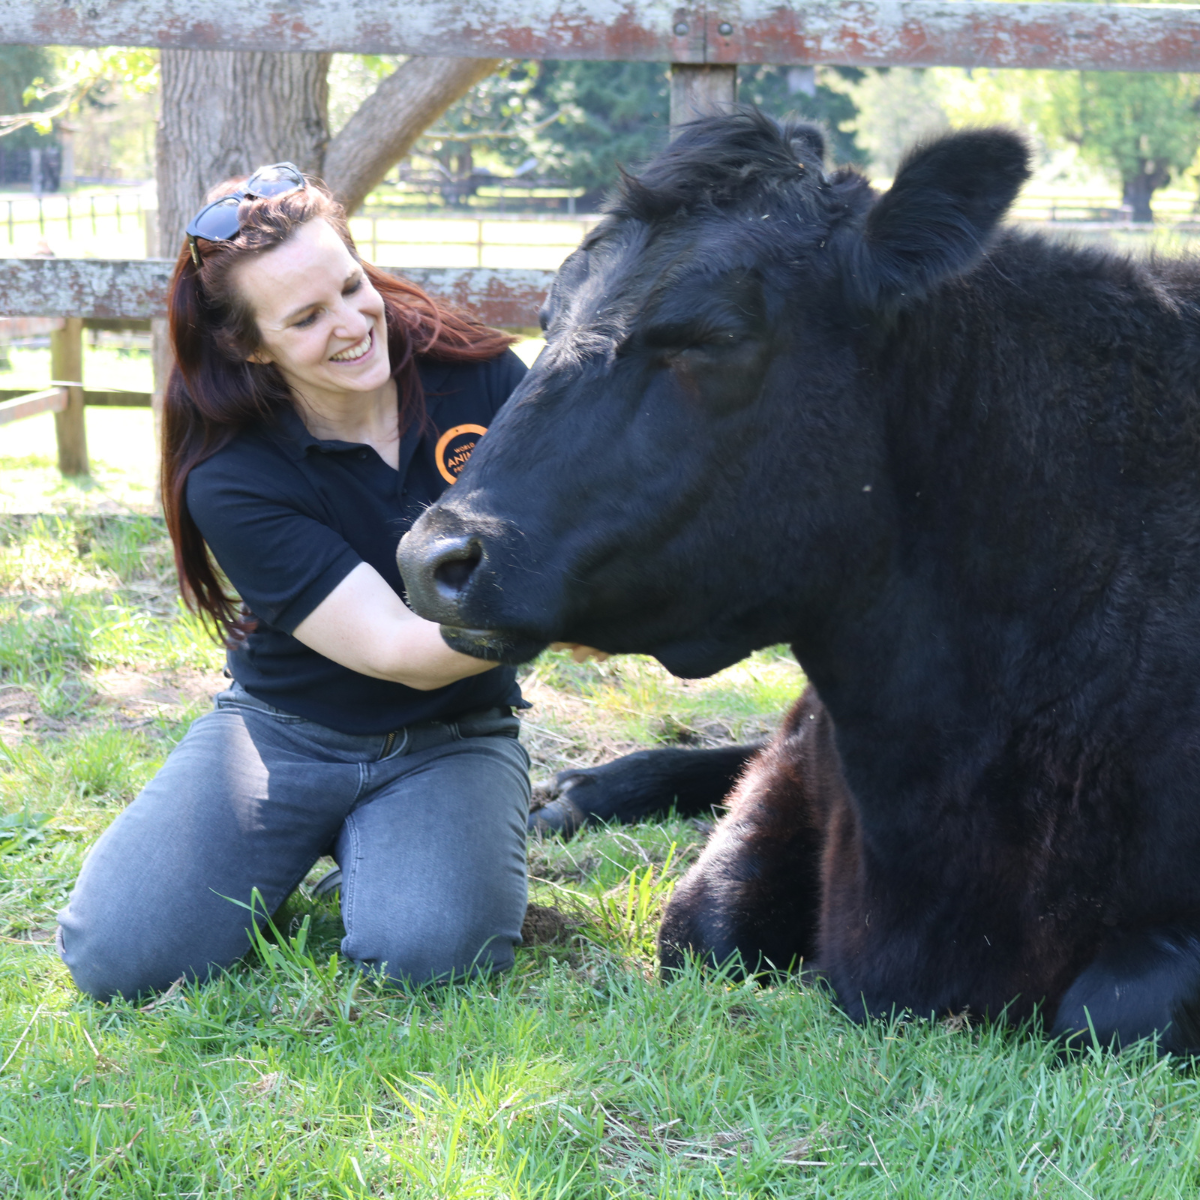 Una vaca disfruta siendo acariciada por una mujer en un santuario.